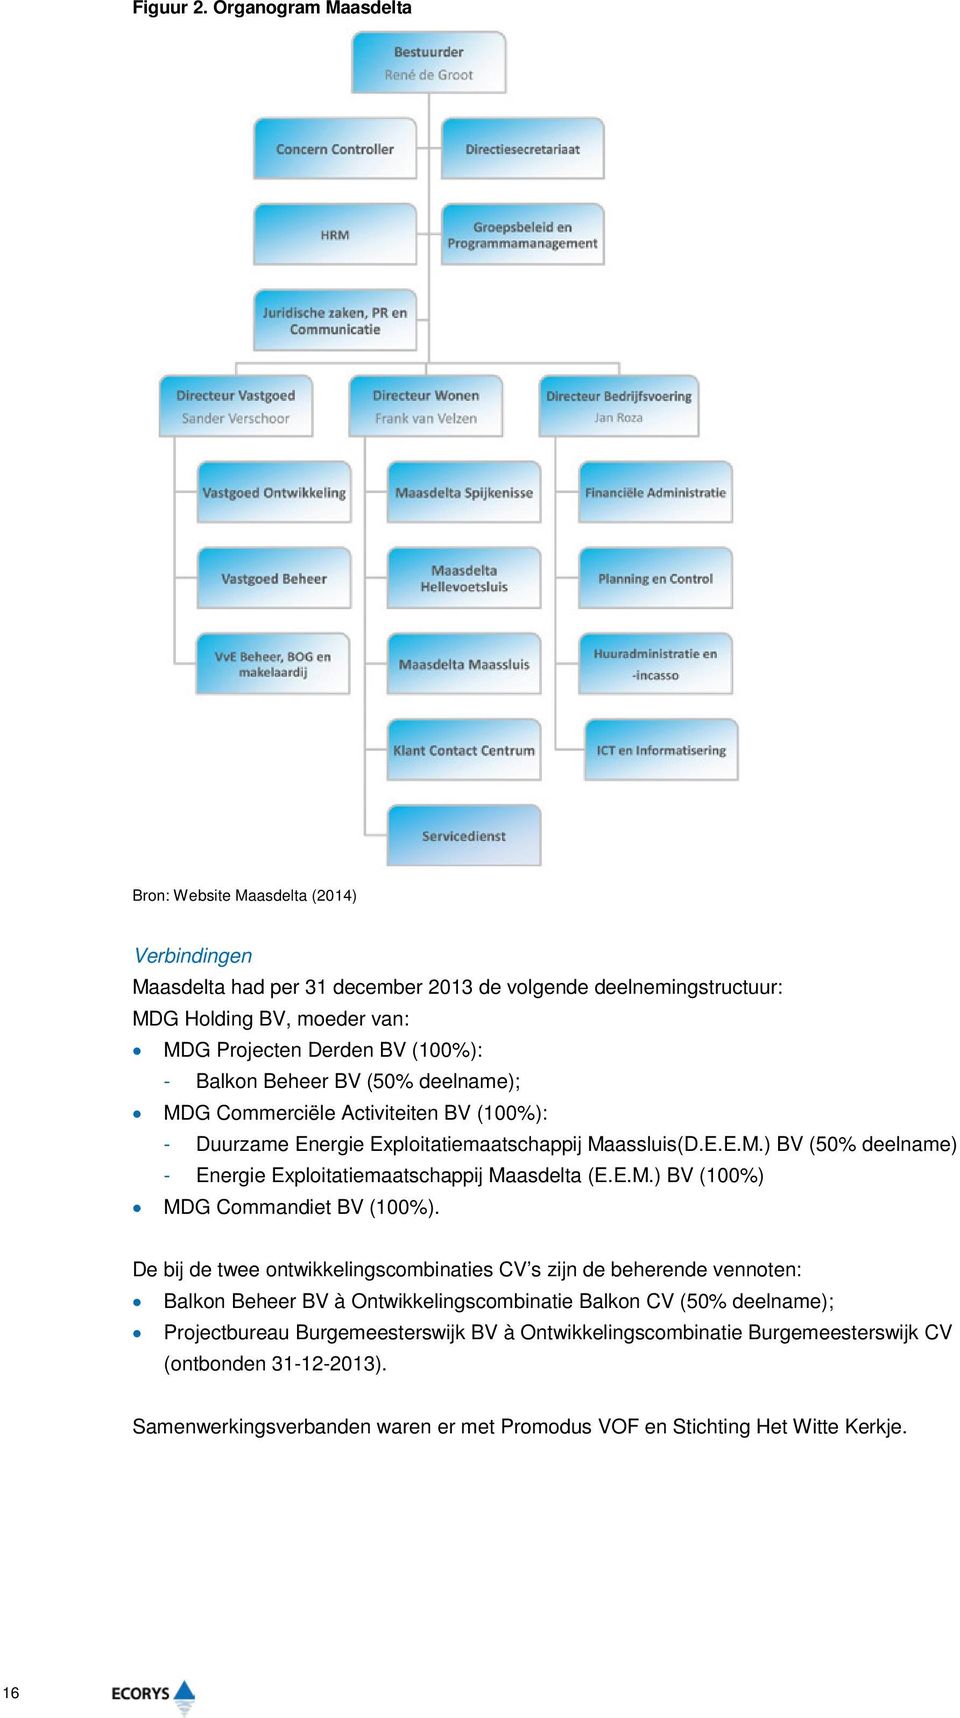 Balkon Beheer BV (50% deelname); MDG Commerciële Activiteiten BV (100%): - Duurzame Energie Exploitatiemaatschappij Maassluis(D.E.E.M.) BV (50% deelname) - Energie Exploitatiemaatschappij Maasdelta (E.